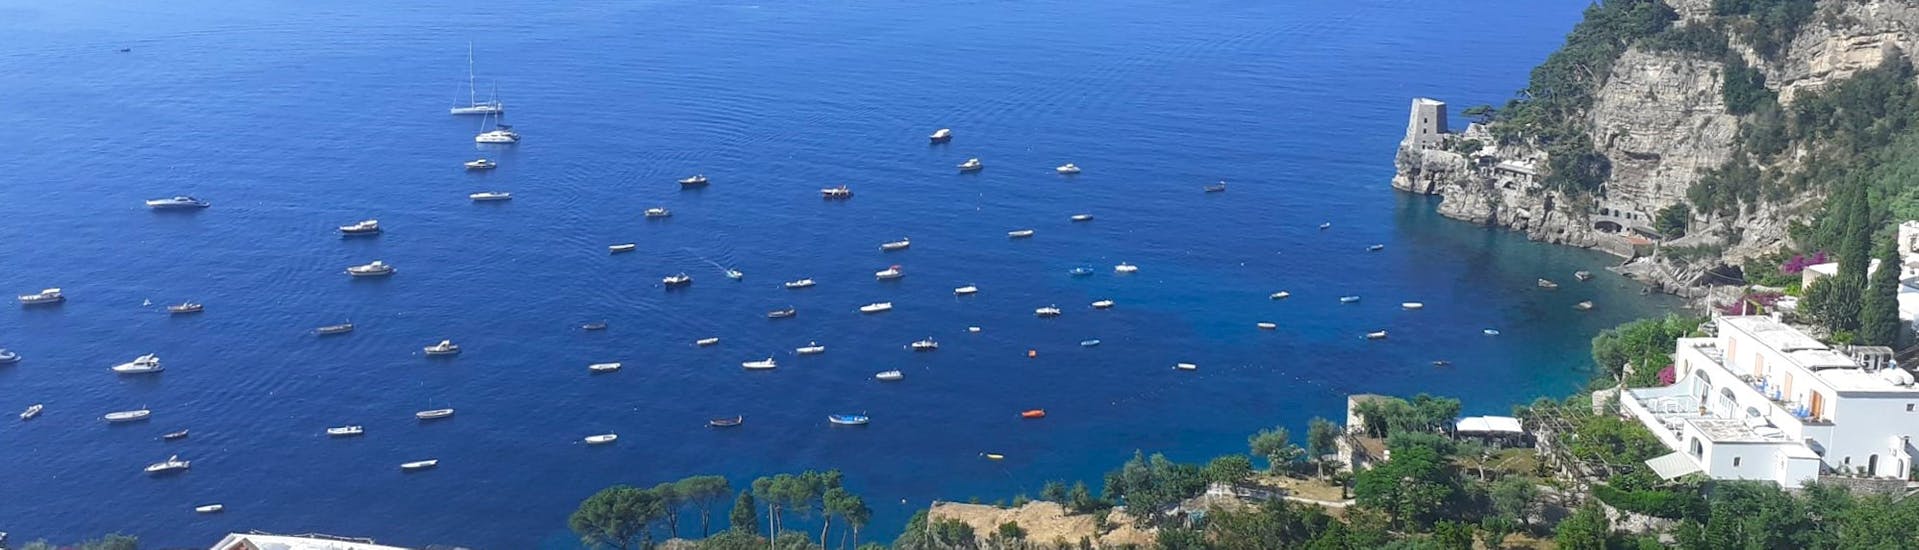 Vista de la Costa Amalfitana desde arriba durante el Paseo Privado en Barco por la Costa Amalfitana desde Positano - Medio Día.